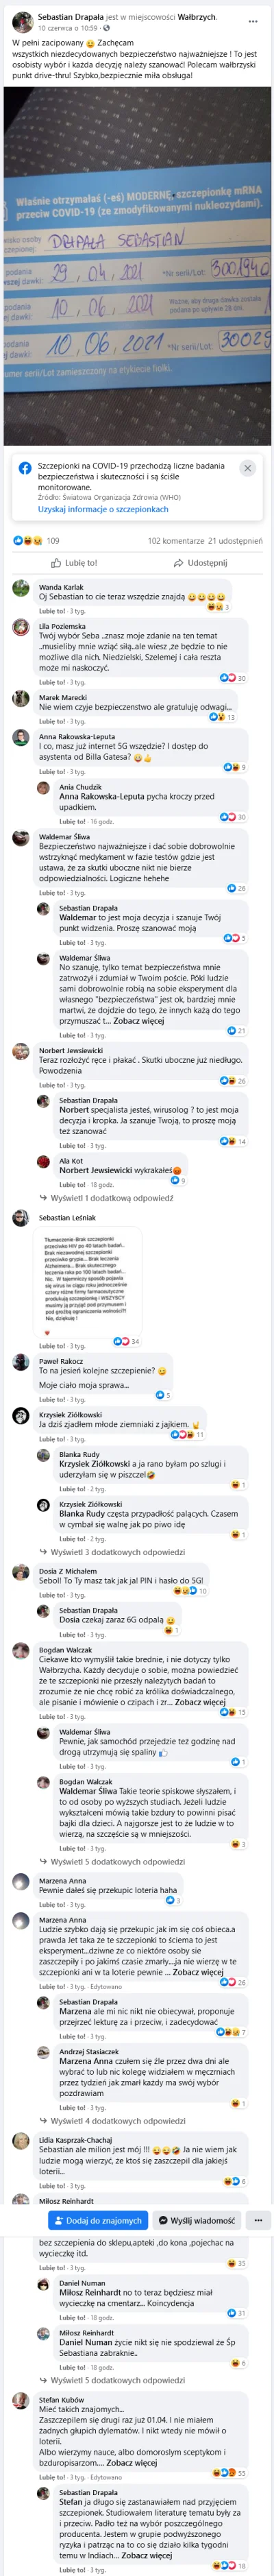 prawilnik - Ku pamięci, bo cenzura facebooka wyczyści kolejny profil...
Co za koincy...